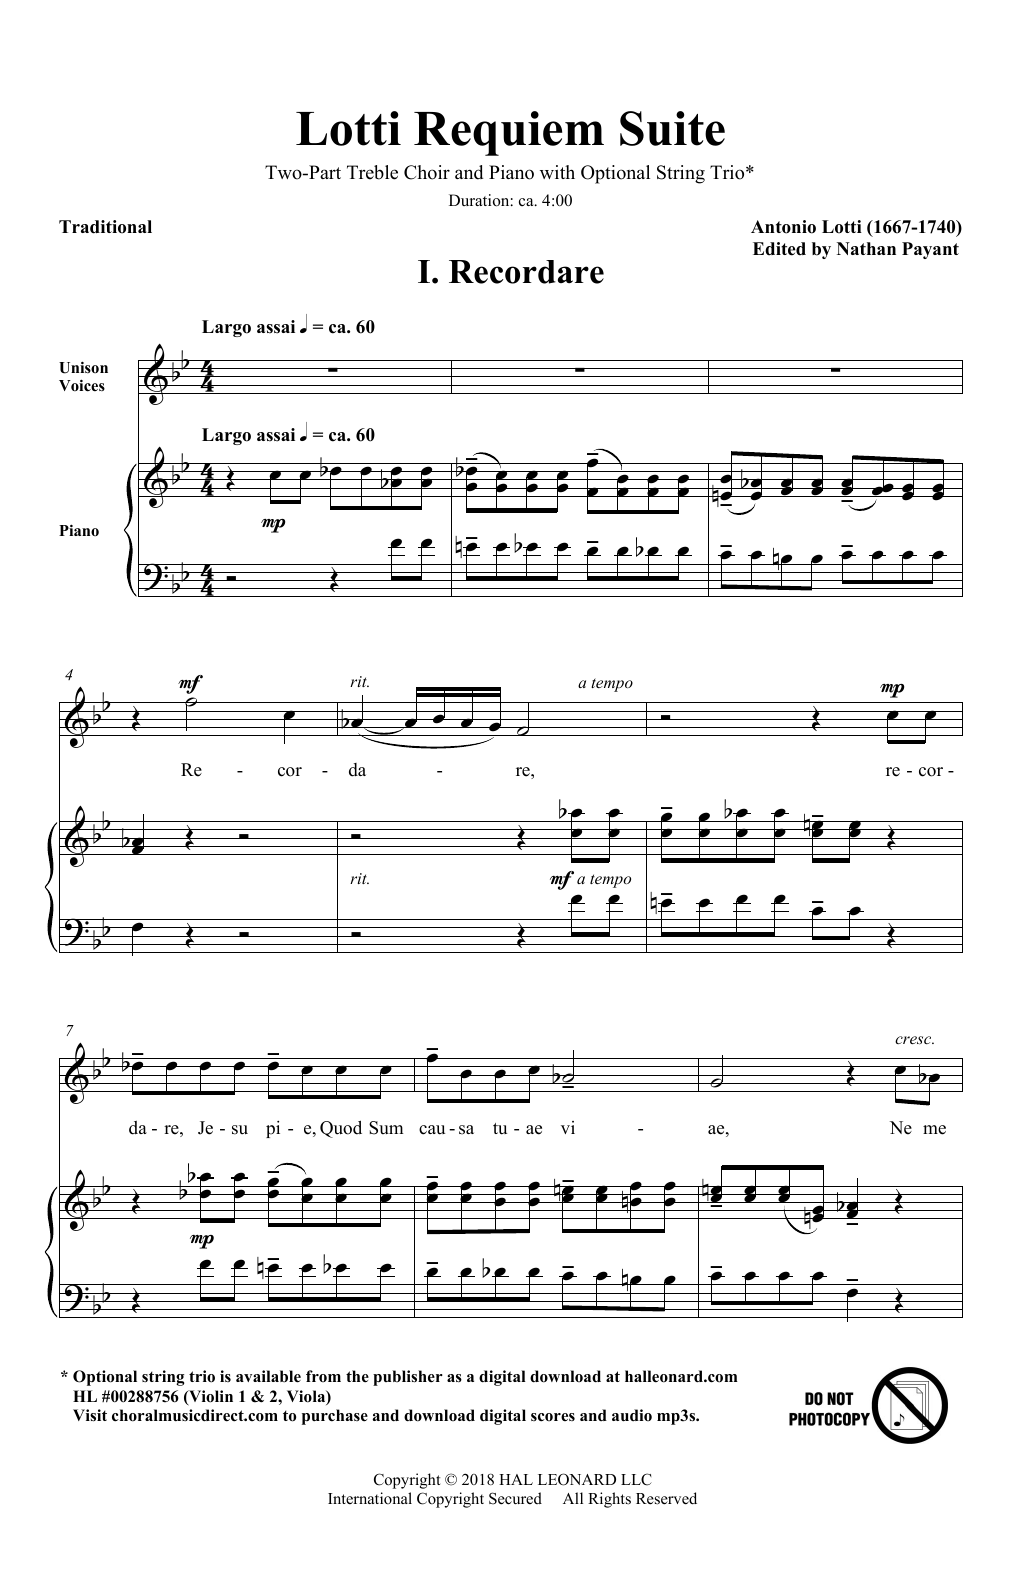 Download Antonio Lotti Lotti Requiem Suite (arr. Natahn Payant Sheet Music